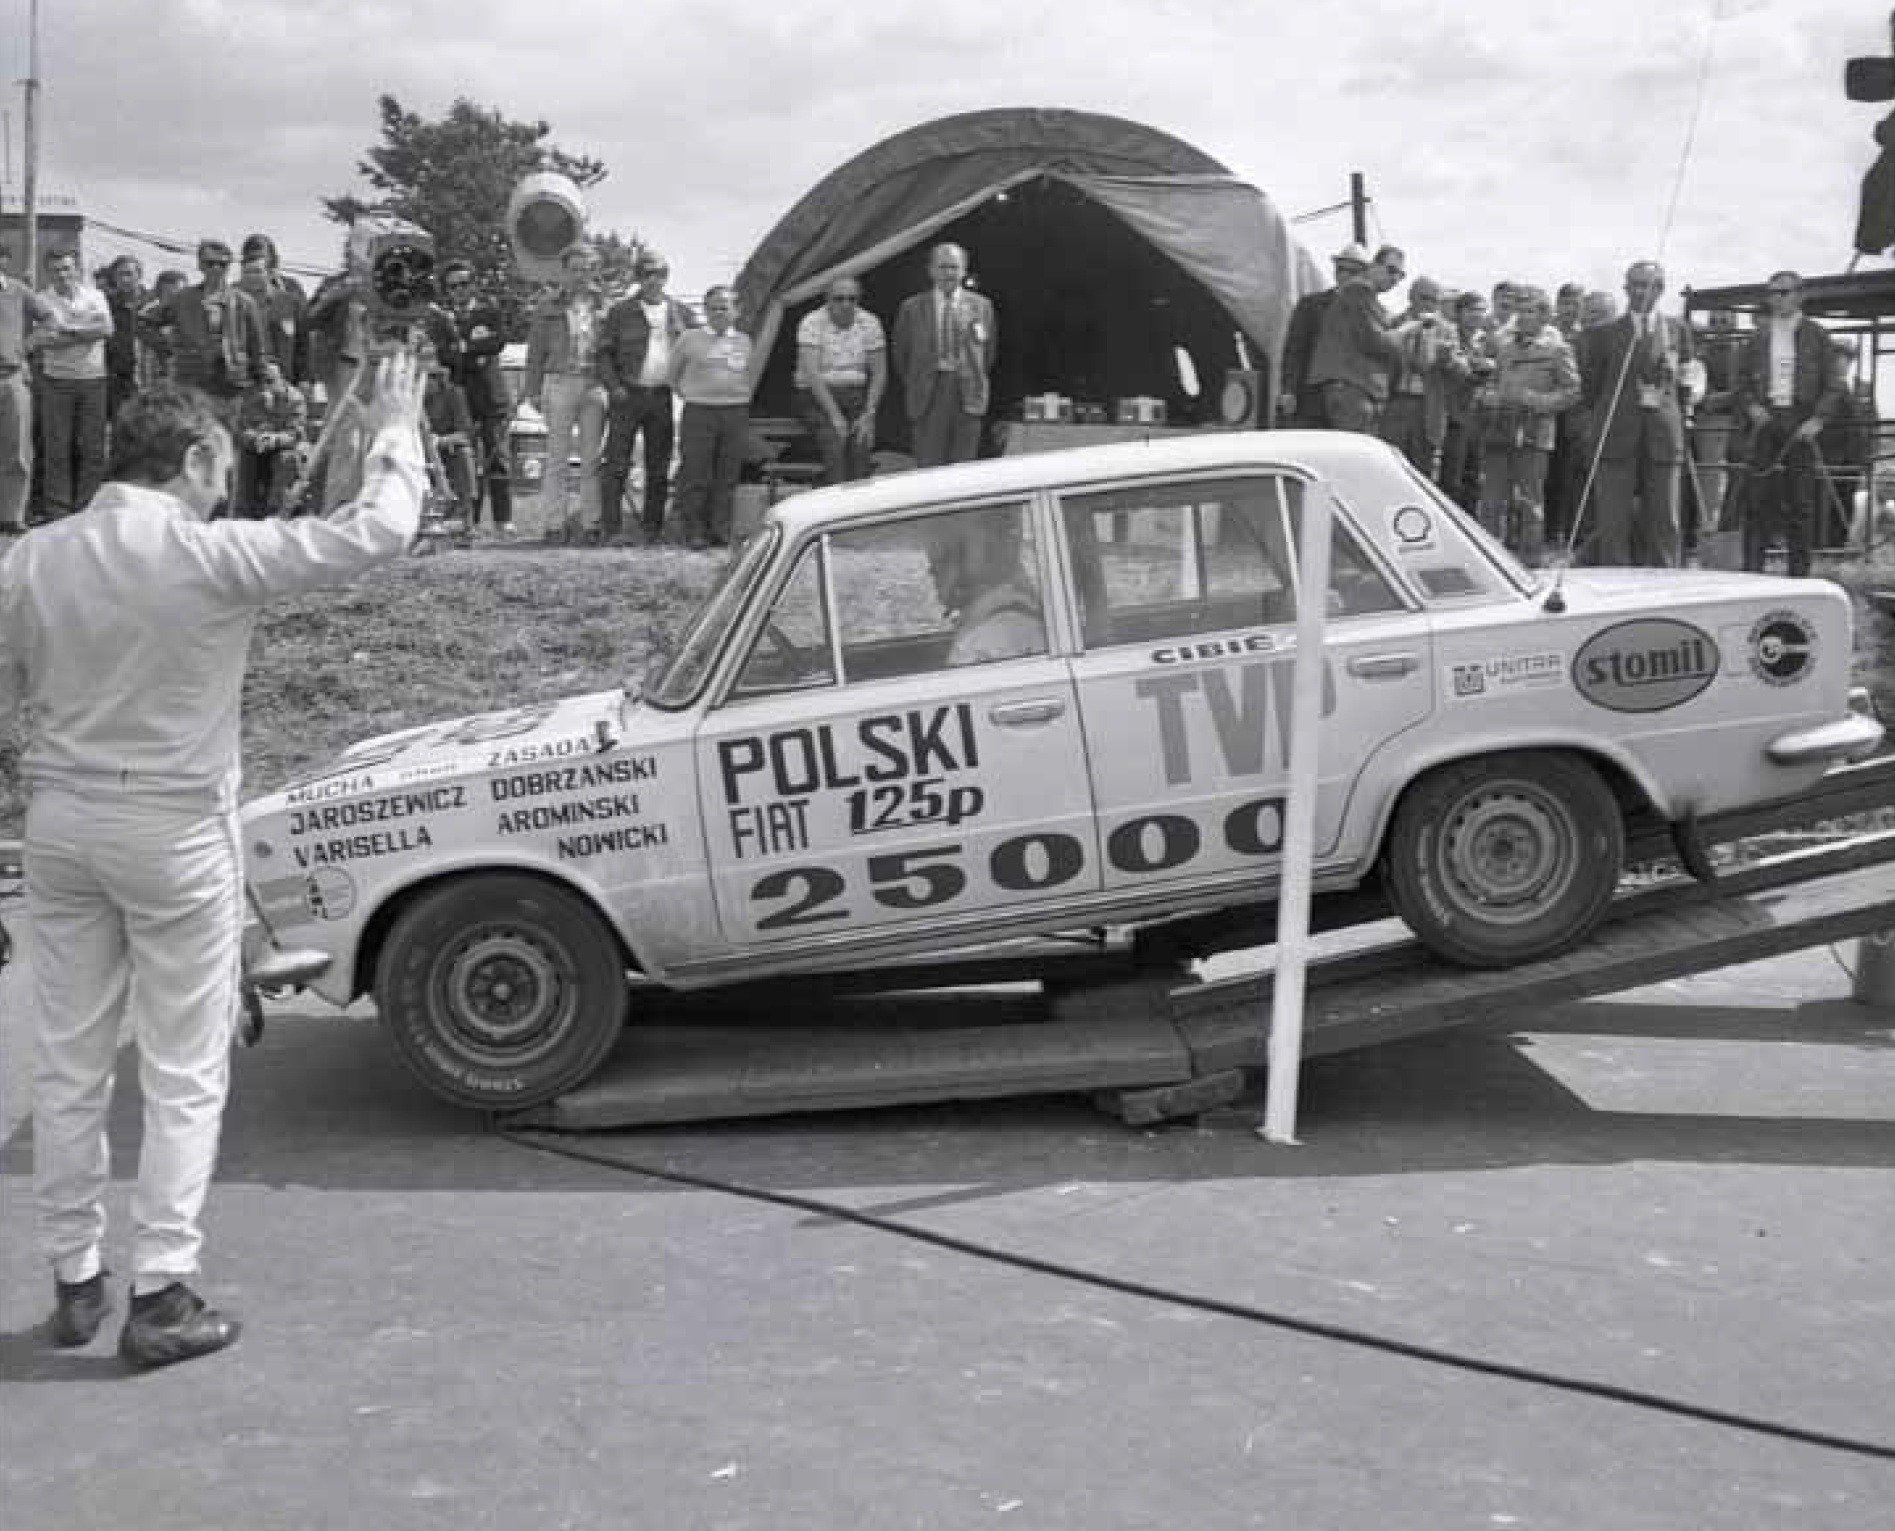  Jubileusz 50-lecia Rekordów Polskiego Fiata